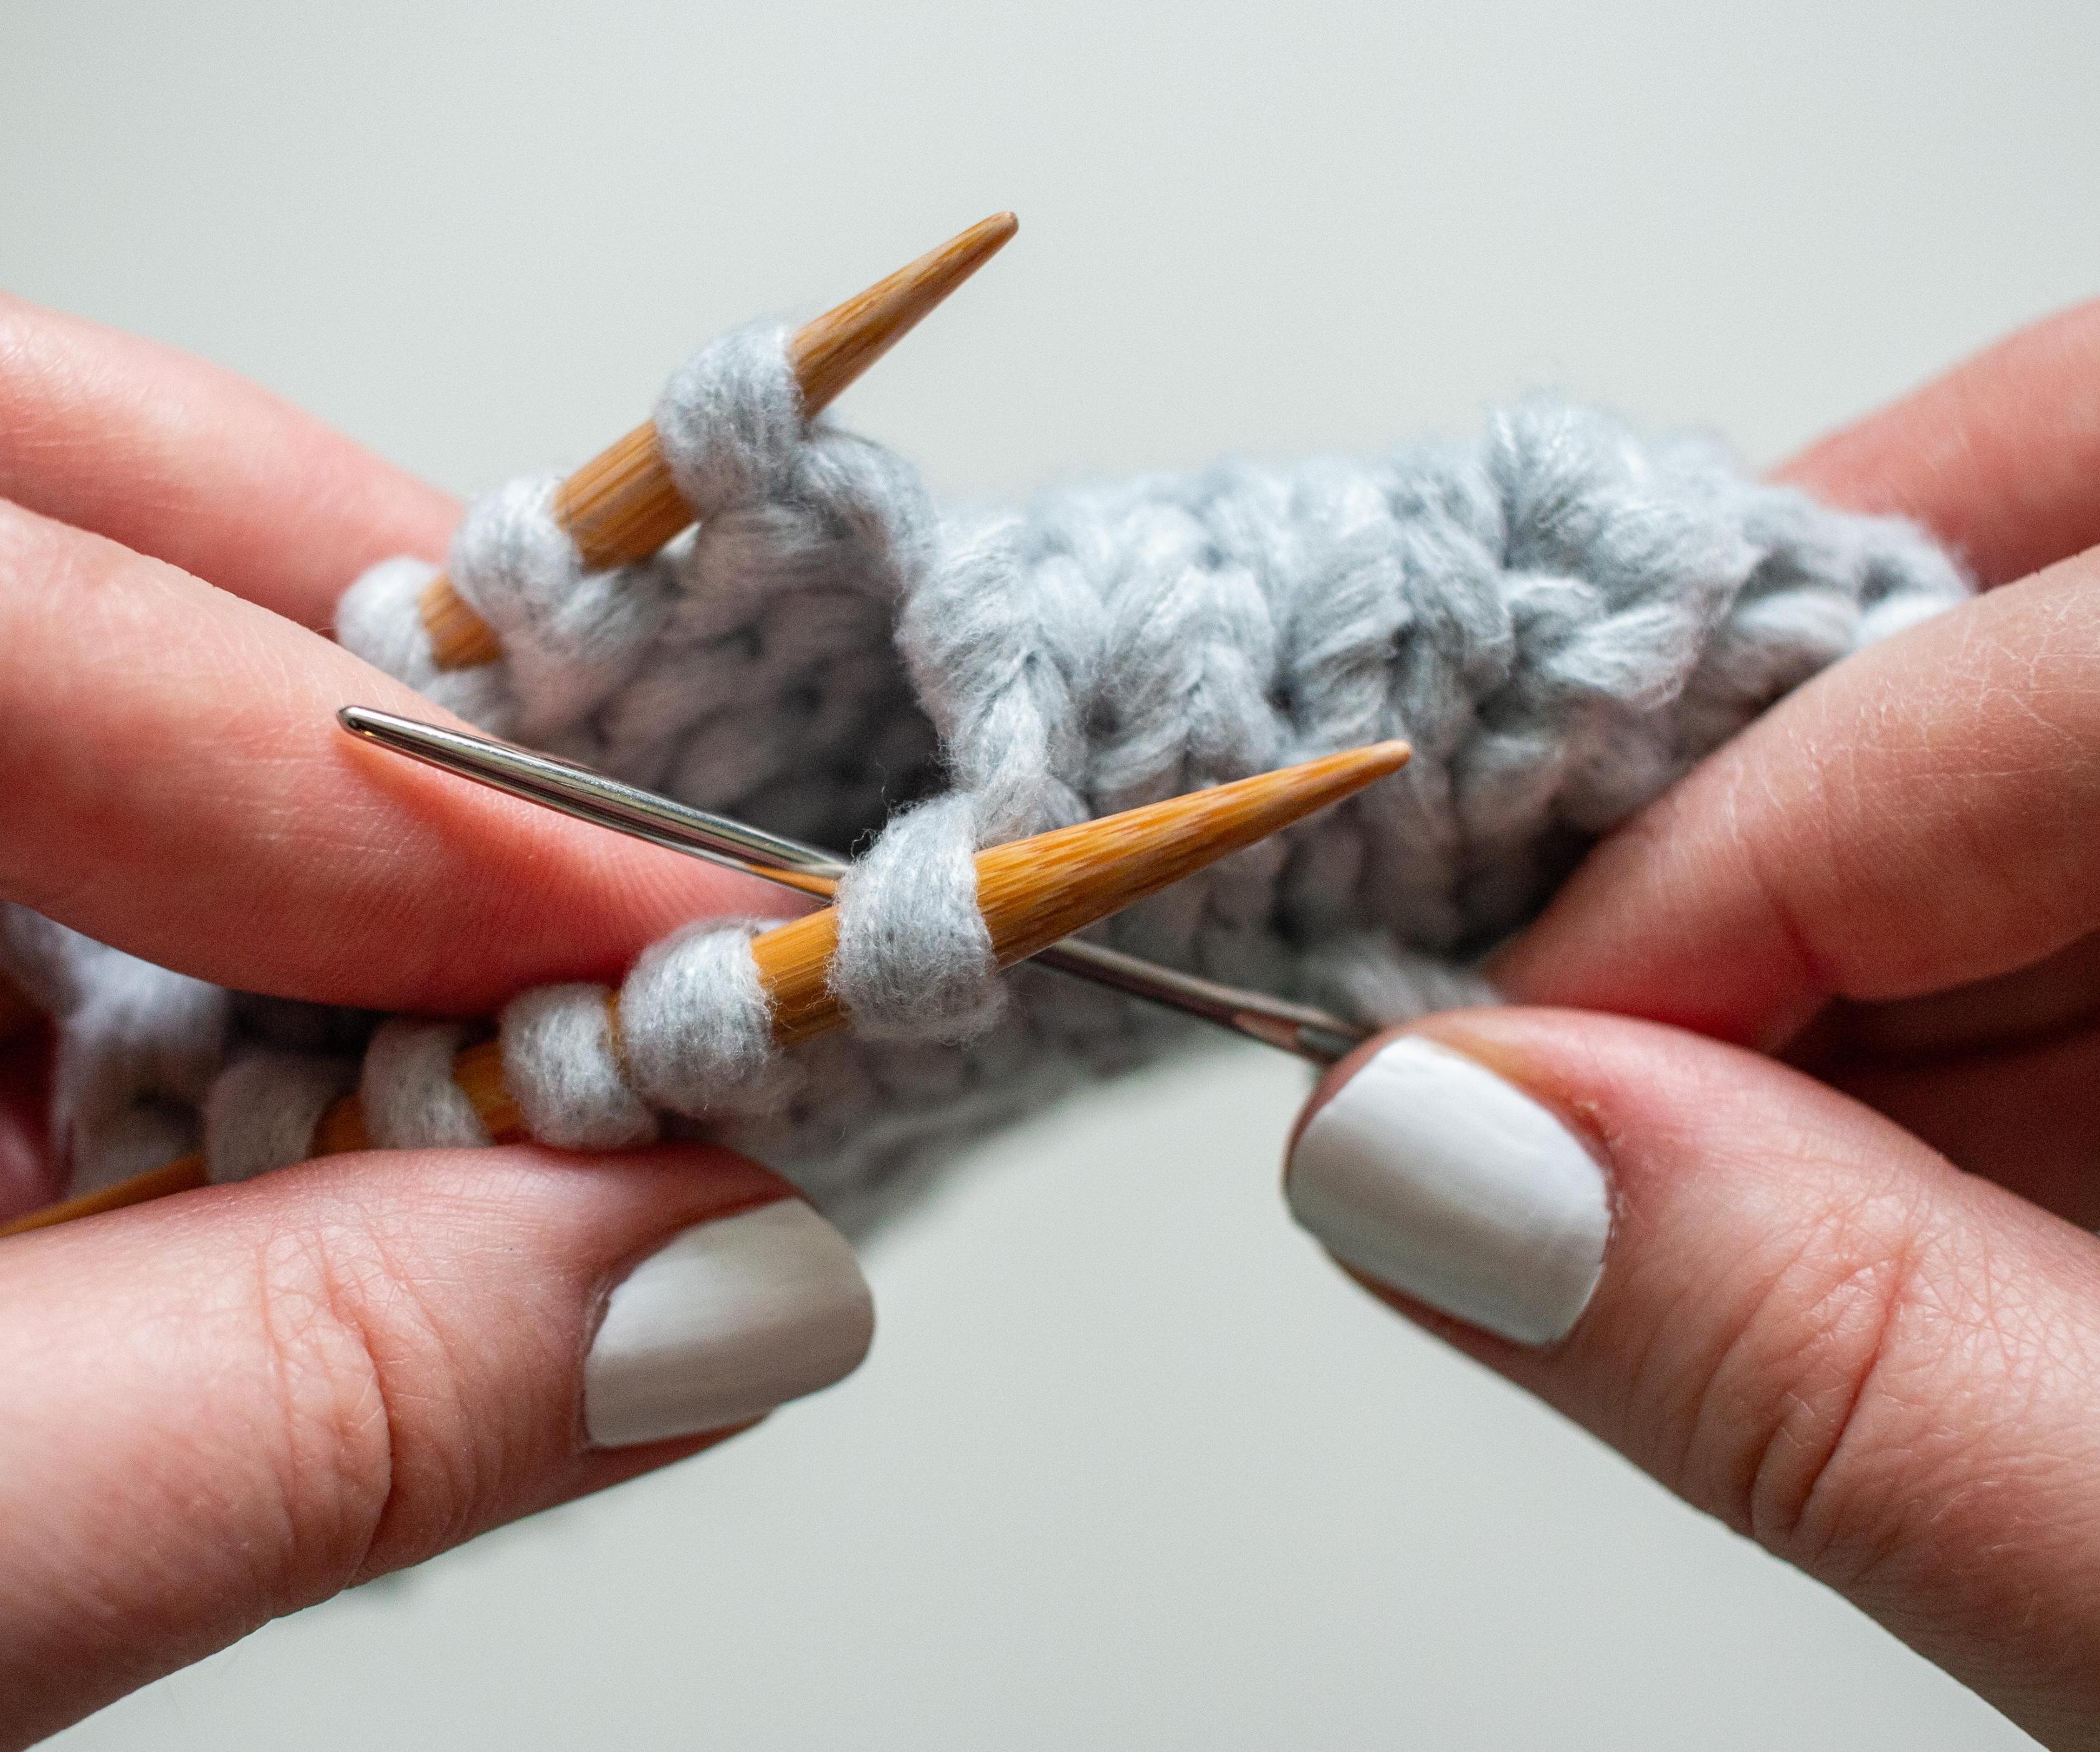 Kitchener Stitch Knitting Tutorial